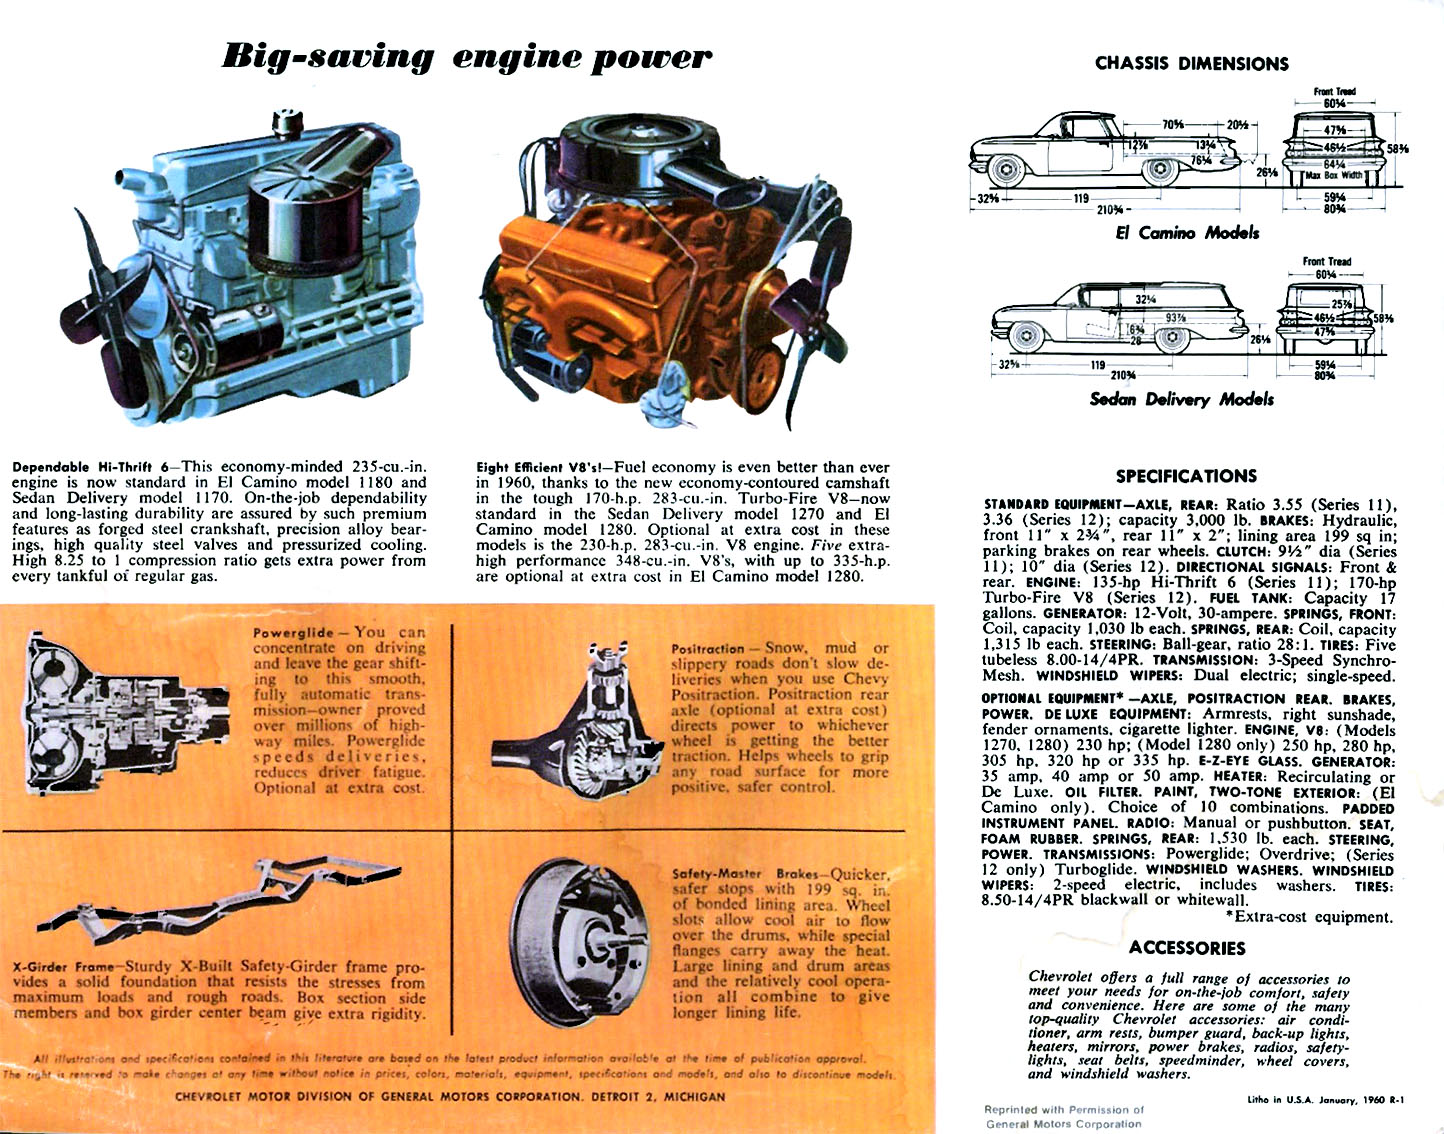 1960 Chevrolet El Camino Brochure Page 2